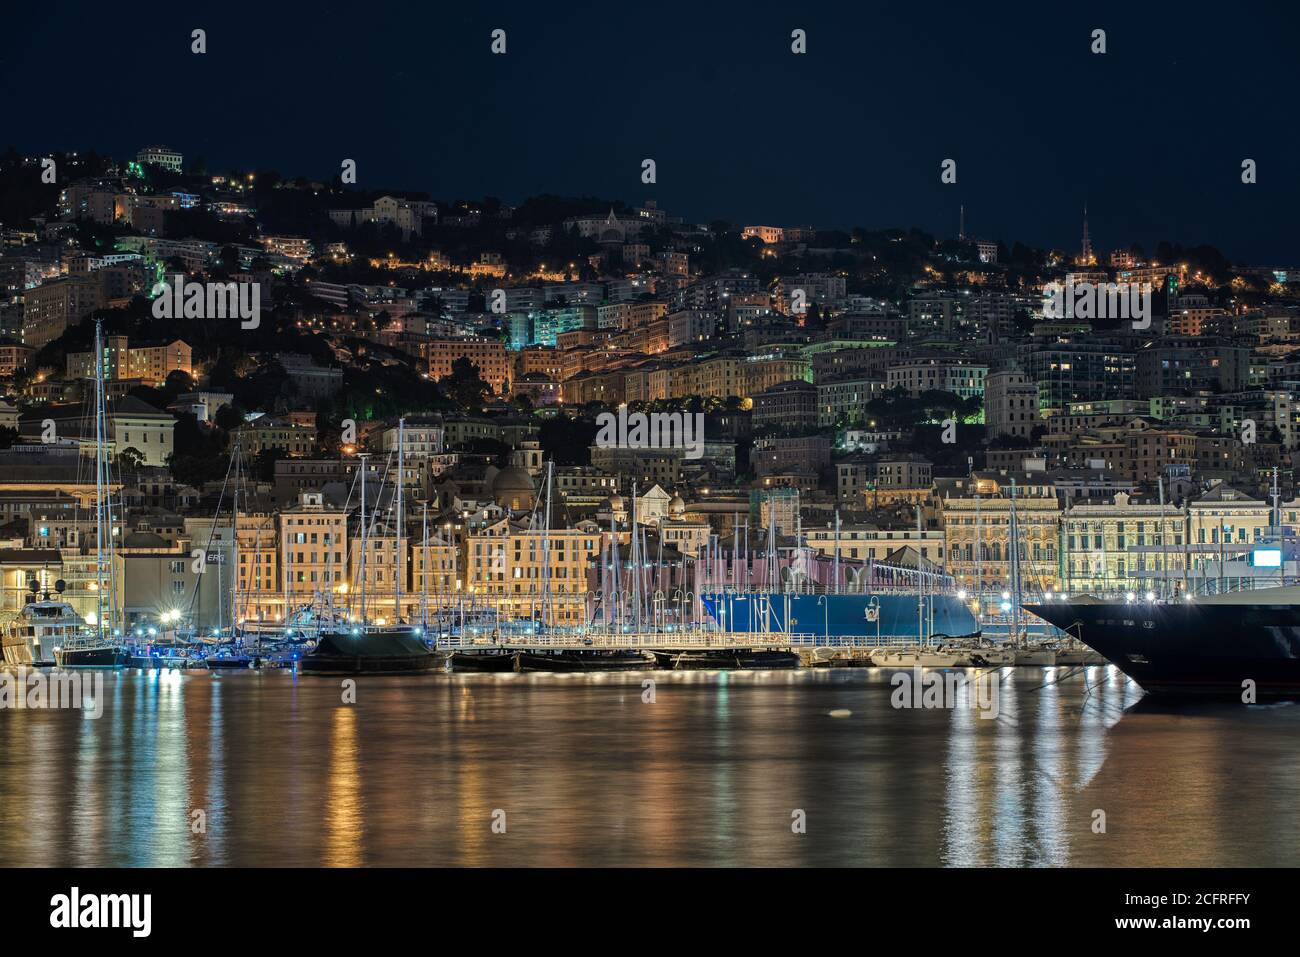 Grand bateau amarré dans le Vieux Port de Gênes, Italie la nuit devant des bâtiments illuminés de bord de mer et des yachts amarrés dans la marina avec des réflexions Banque D'Images